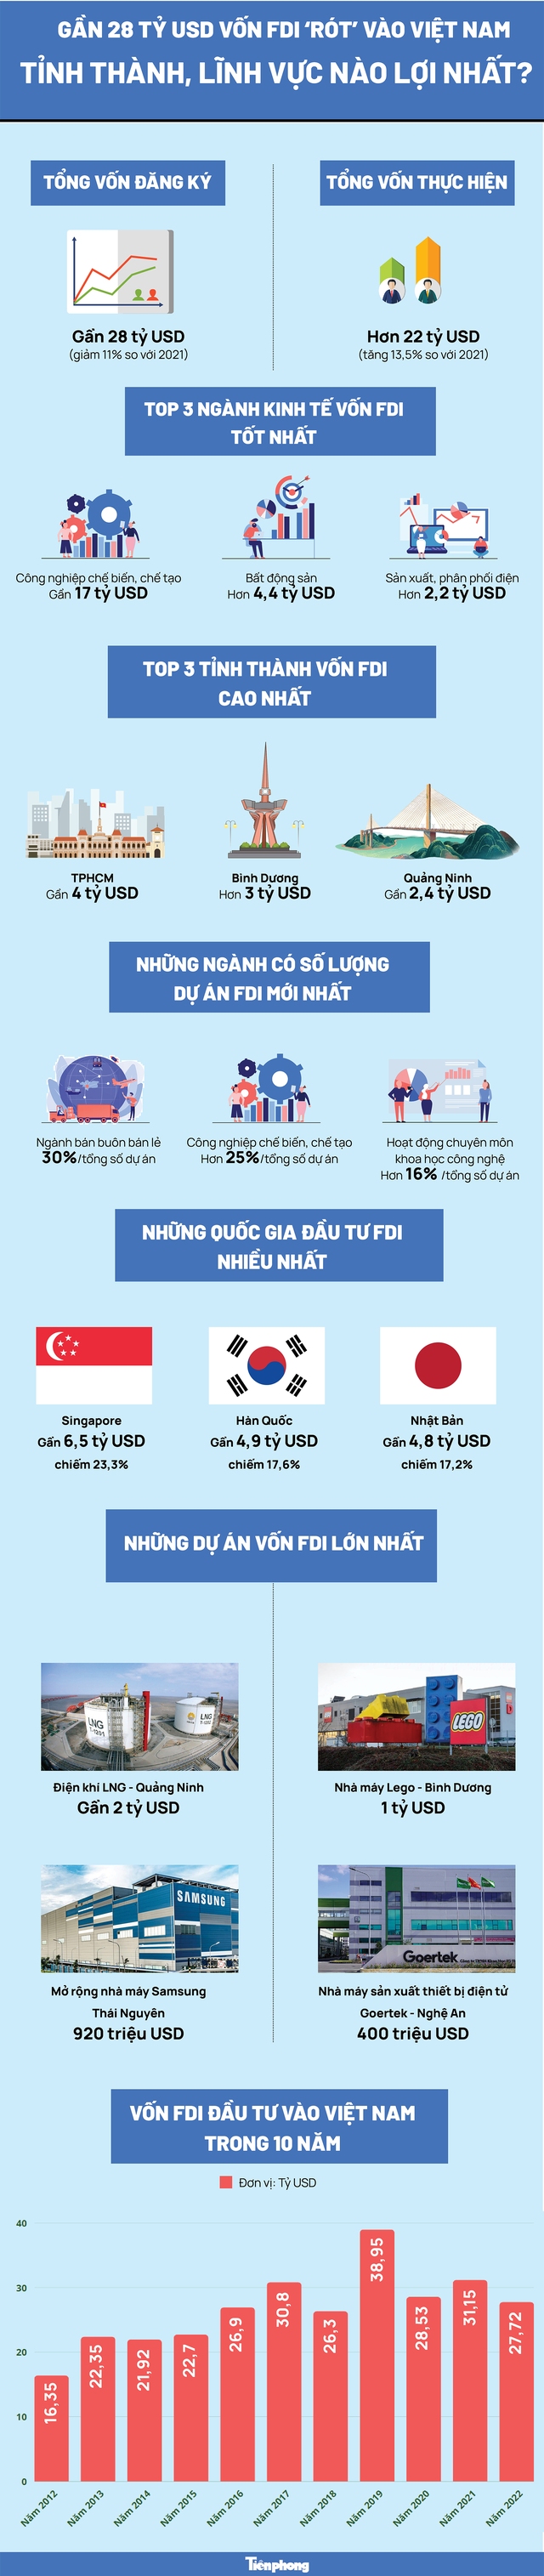 Gần 28 tỷ USD vốn FDI ‘rót’ vào Việt Nam: Tỉnh thành, lĩnh vực nào lợi nhất? - Ảnh 1.